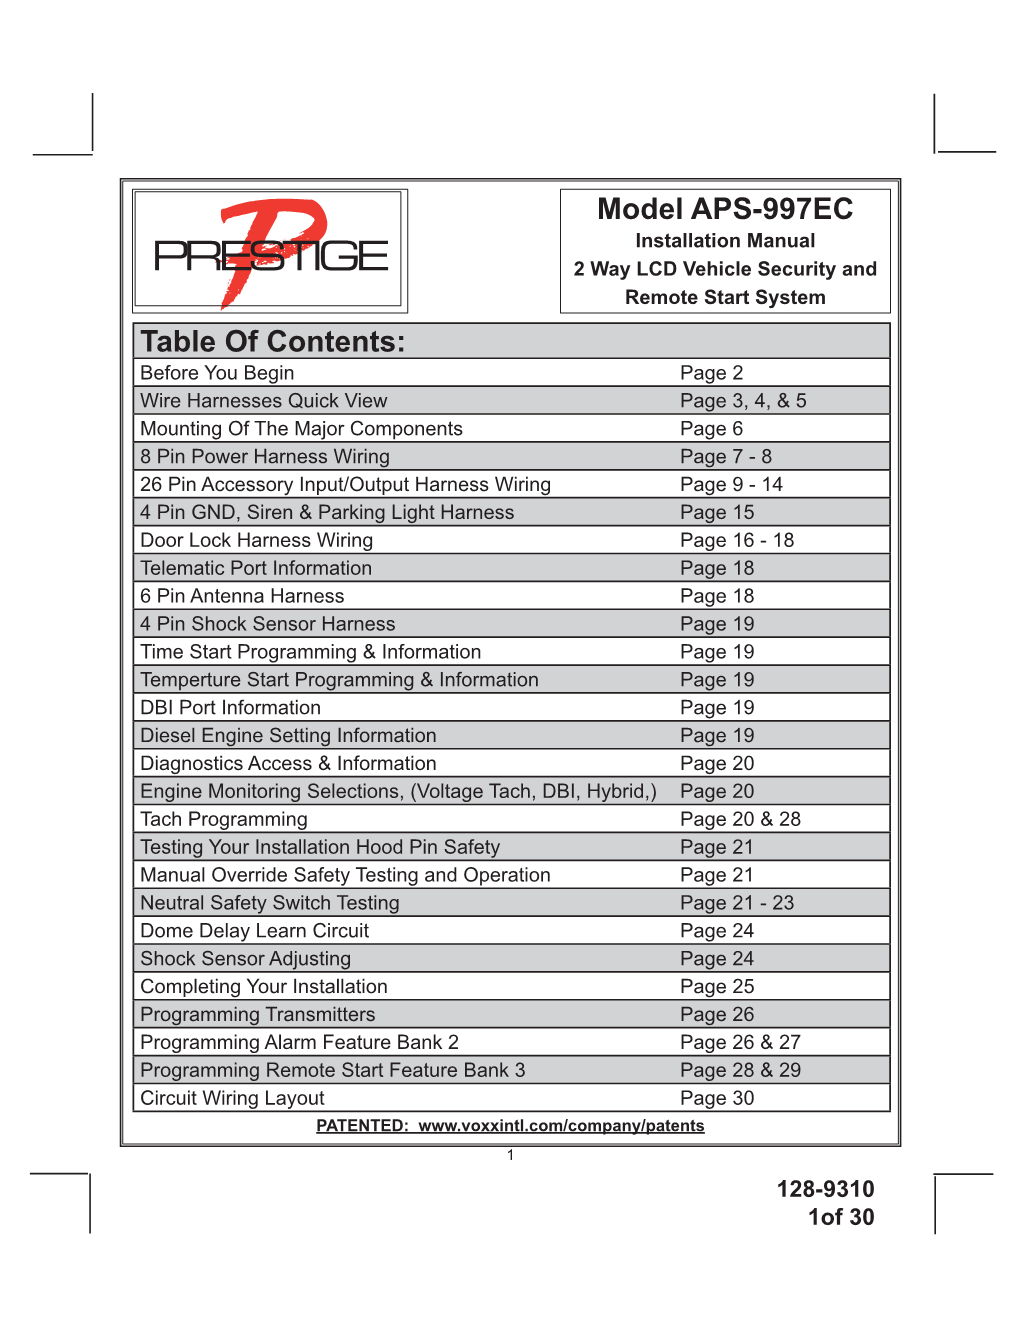 Model APS-997EC Table of Contents